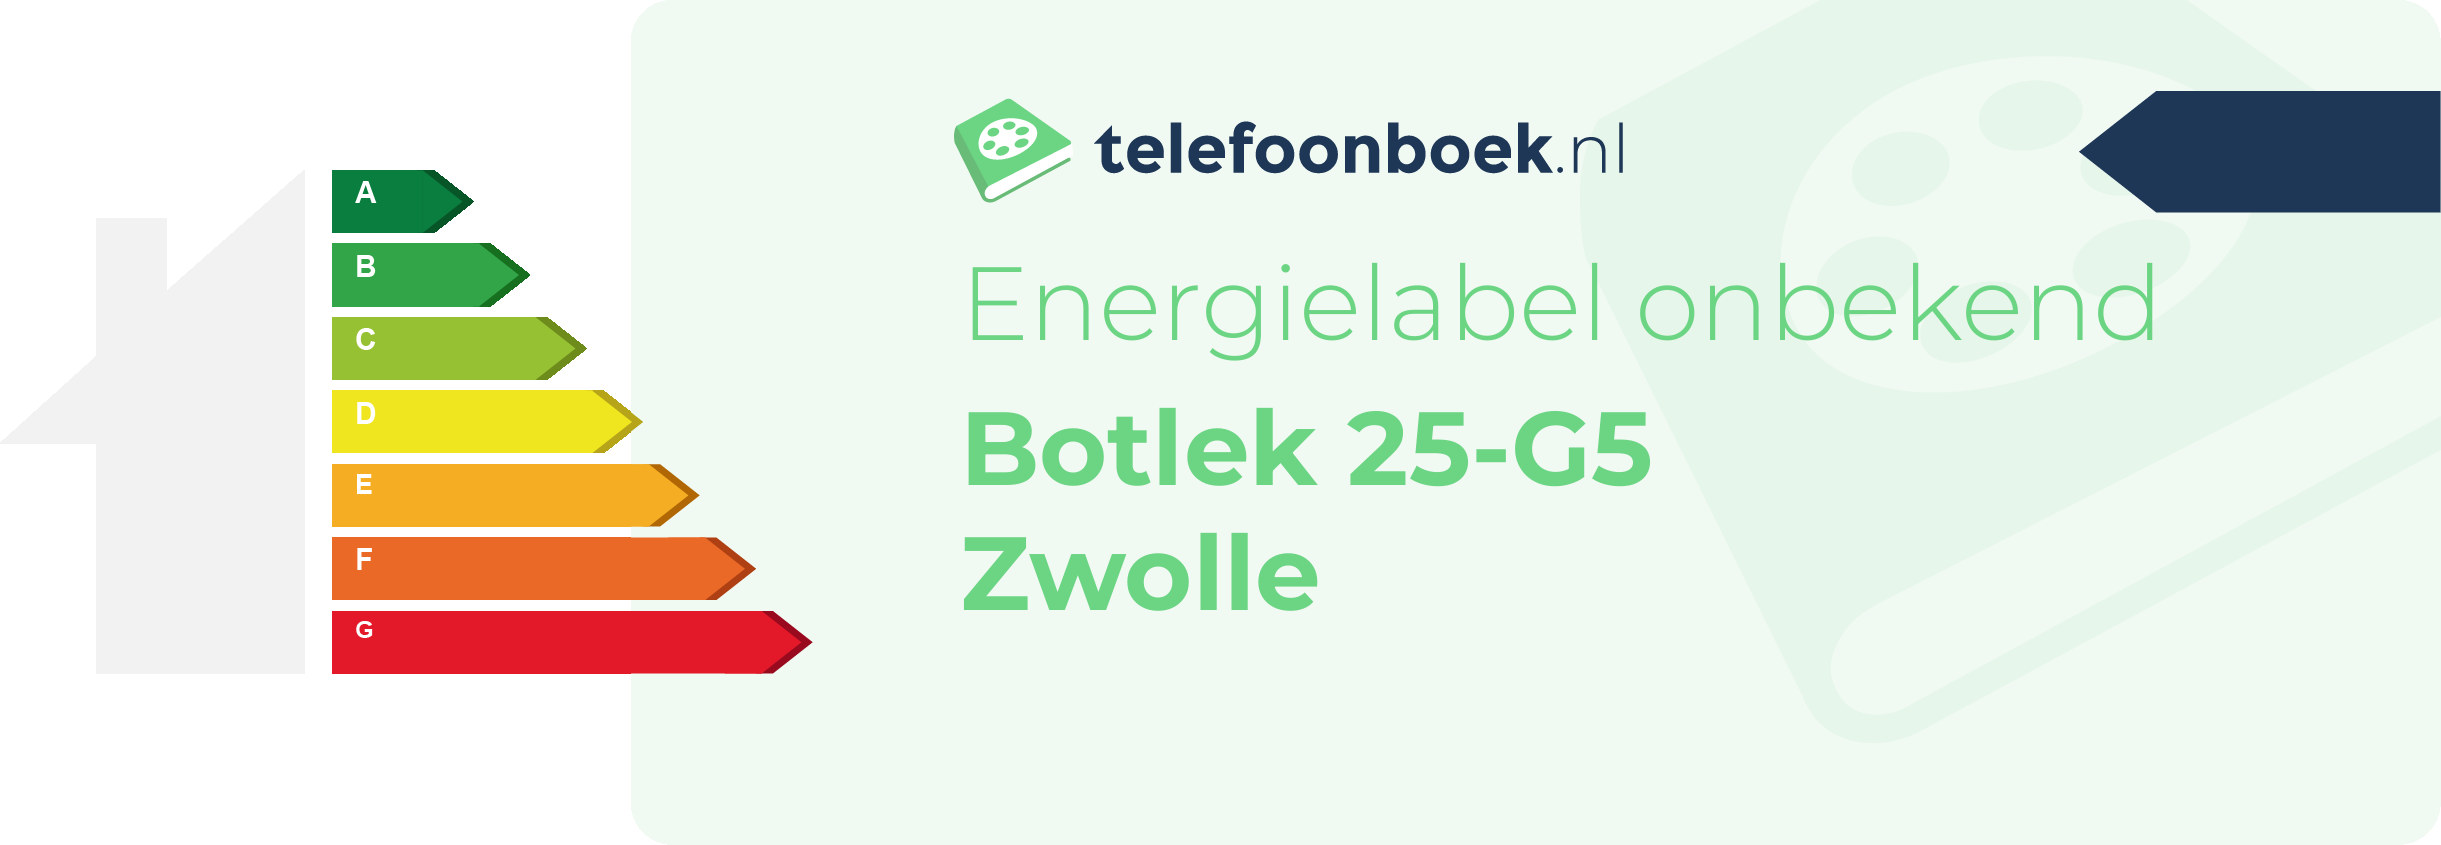 Energielabel Botlek 25-G5 Zwolle